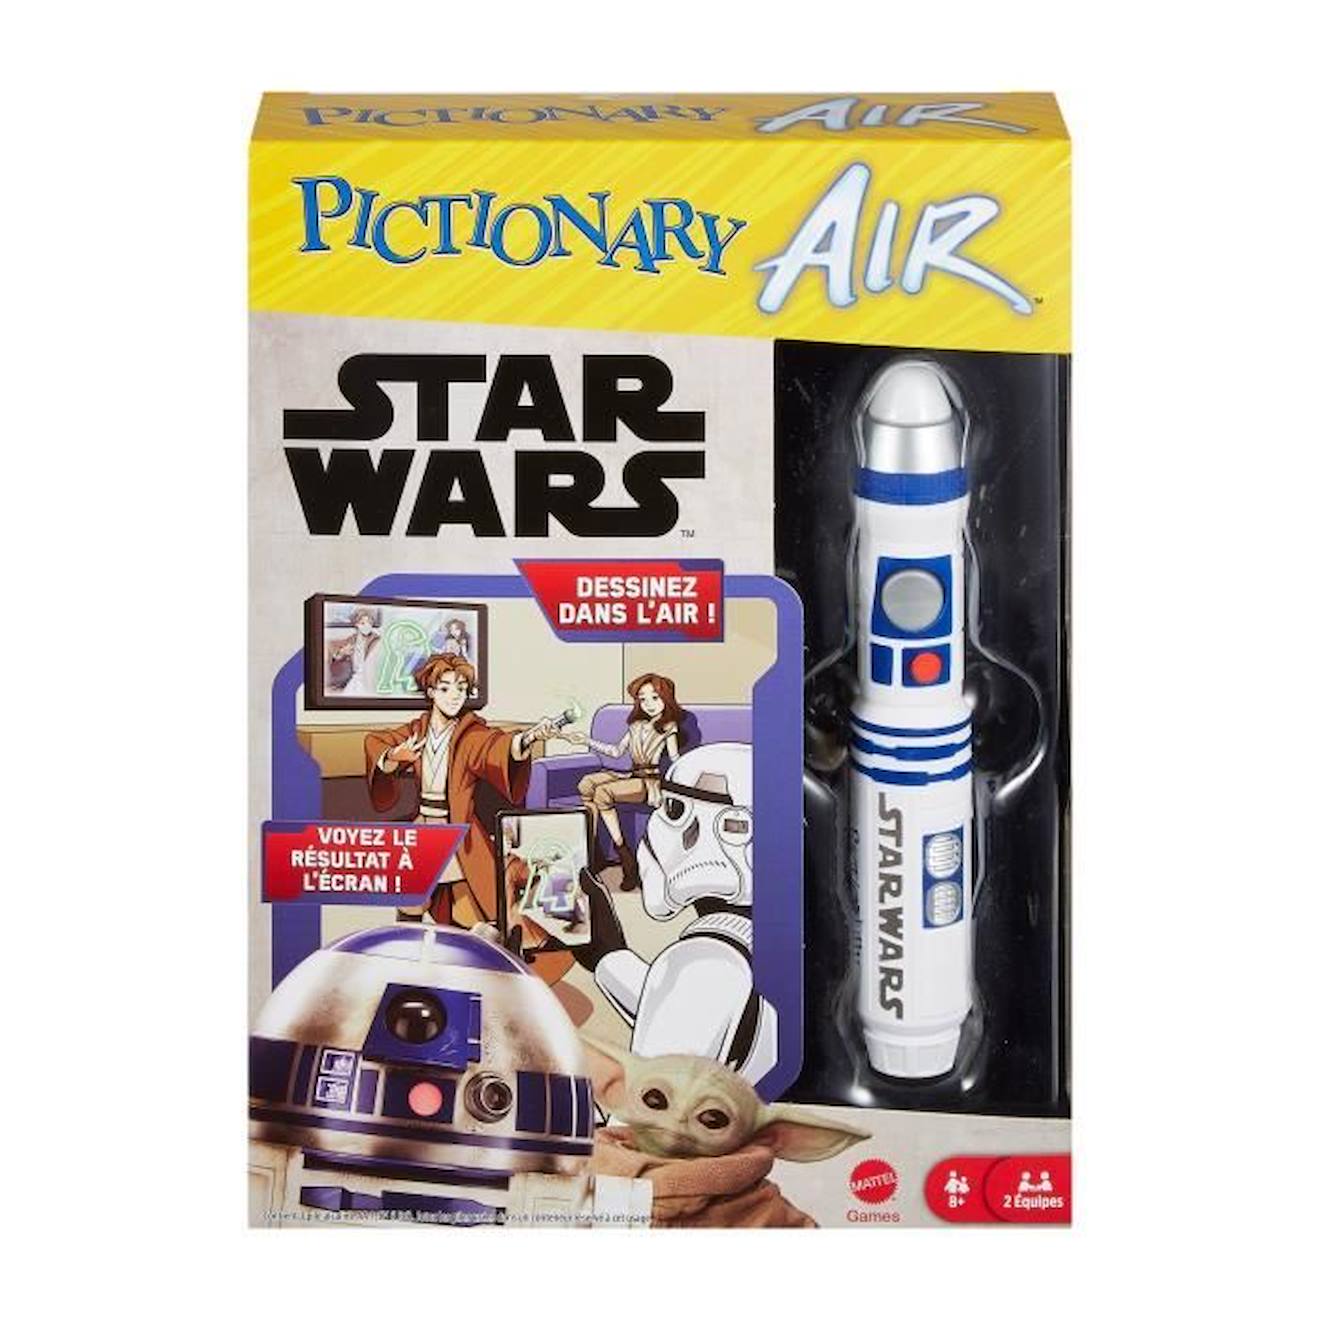 Pictionary - Pictionary Air Star Wars - Jeux De Société - 8 Ans Et